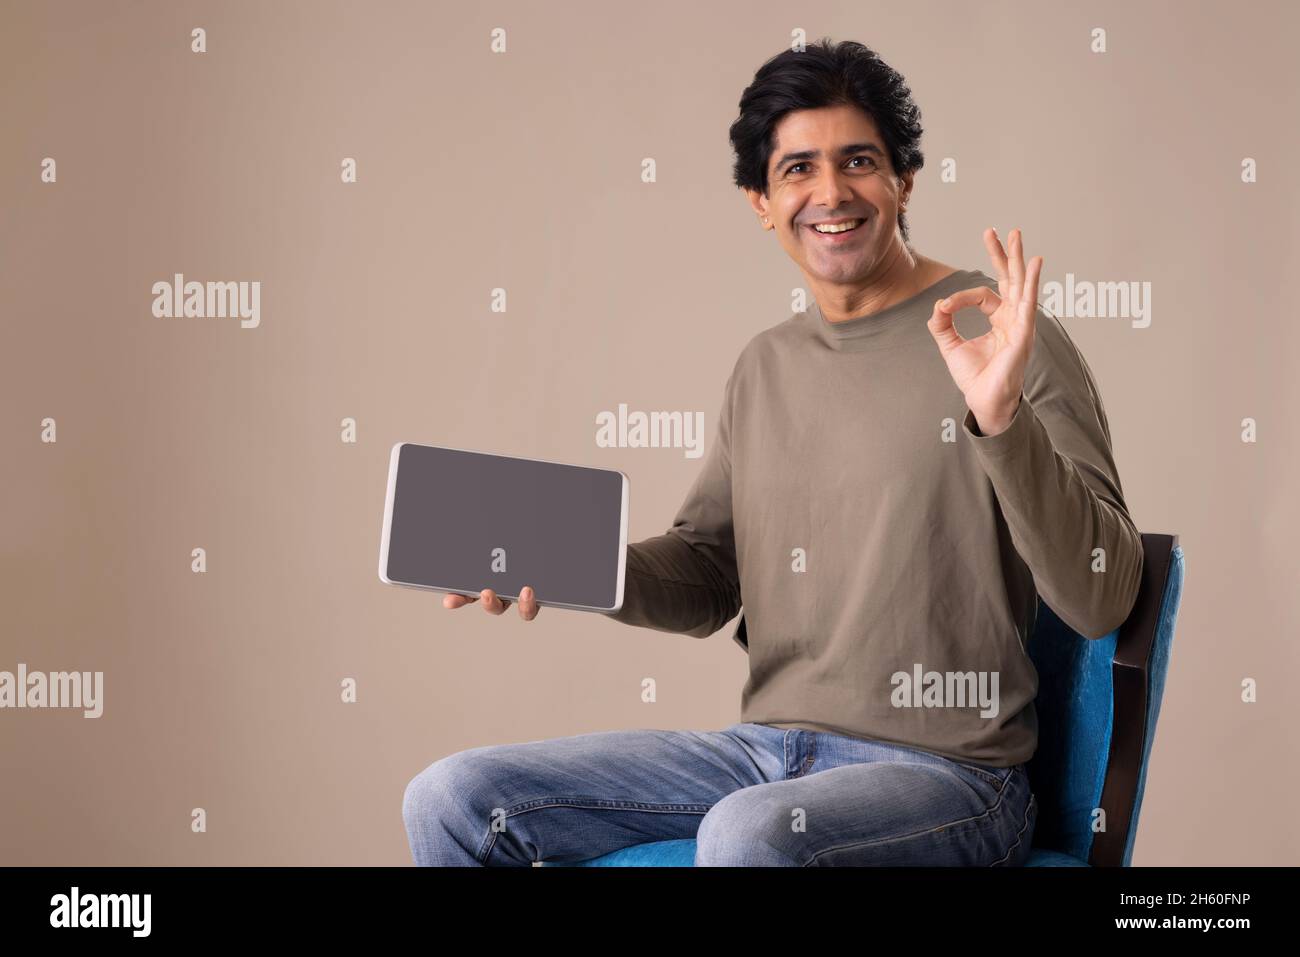 Homme indien montrant sa satisfaction à l'égard de la tablette tout en étant assis sur une chaise Banque D'Images